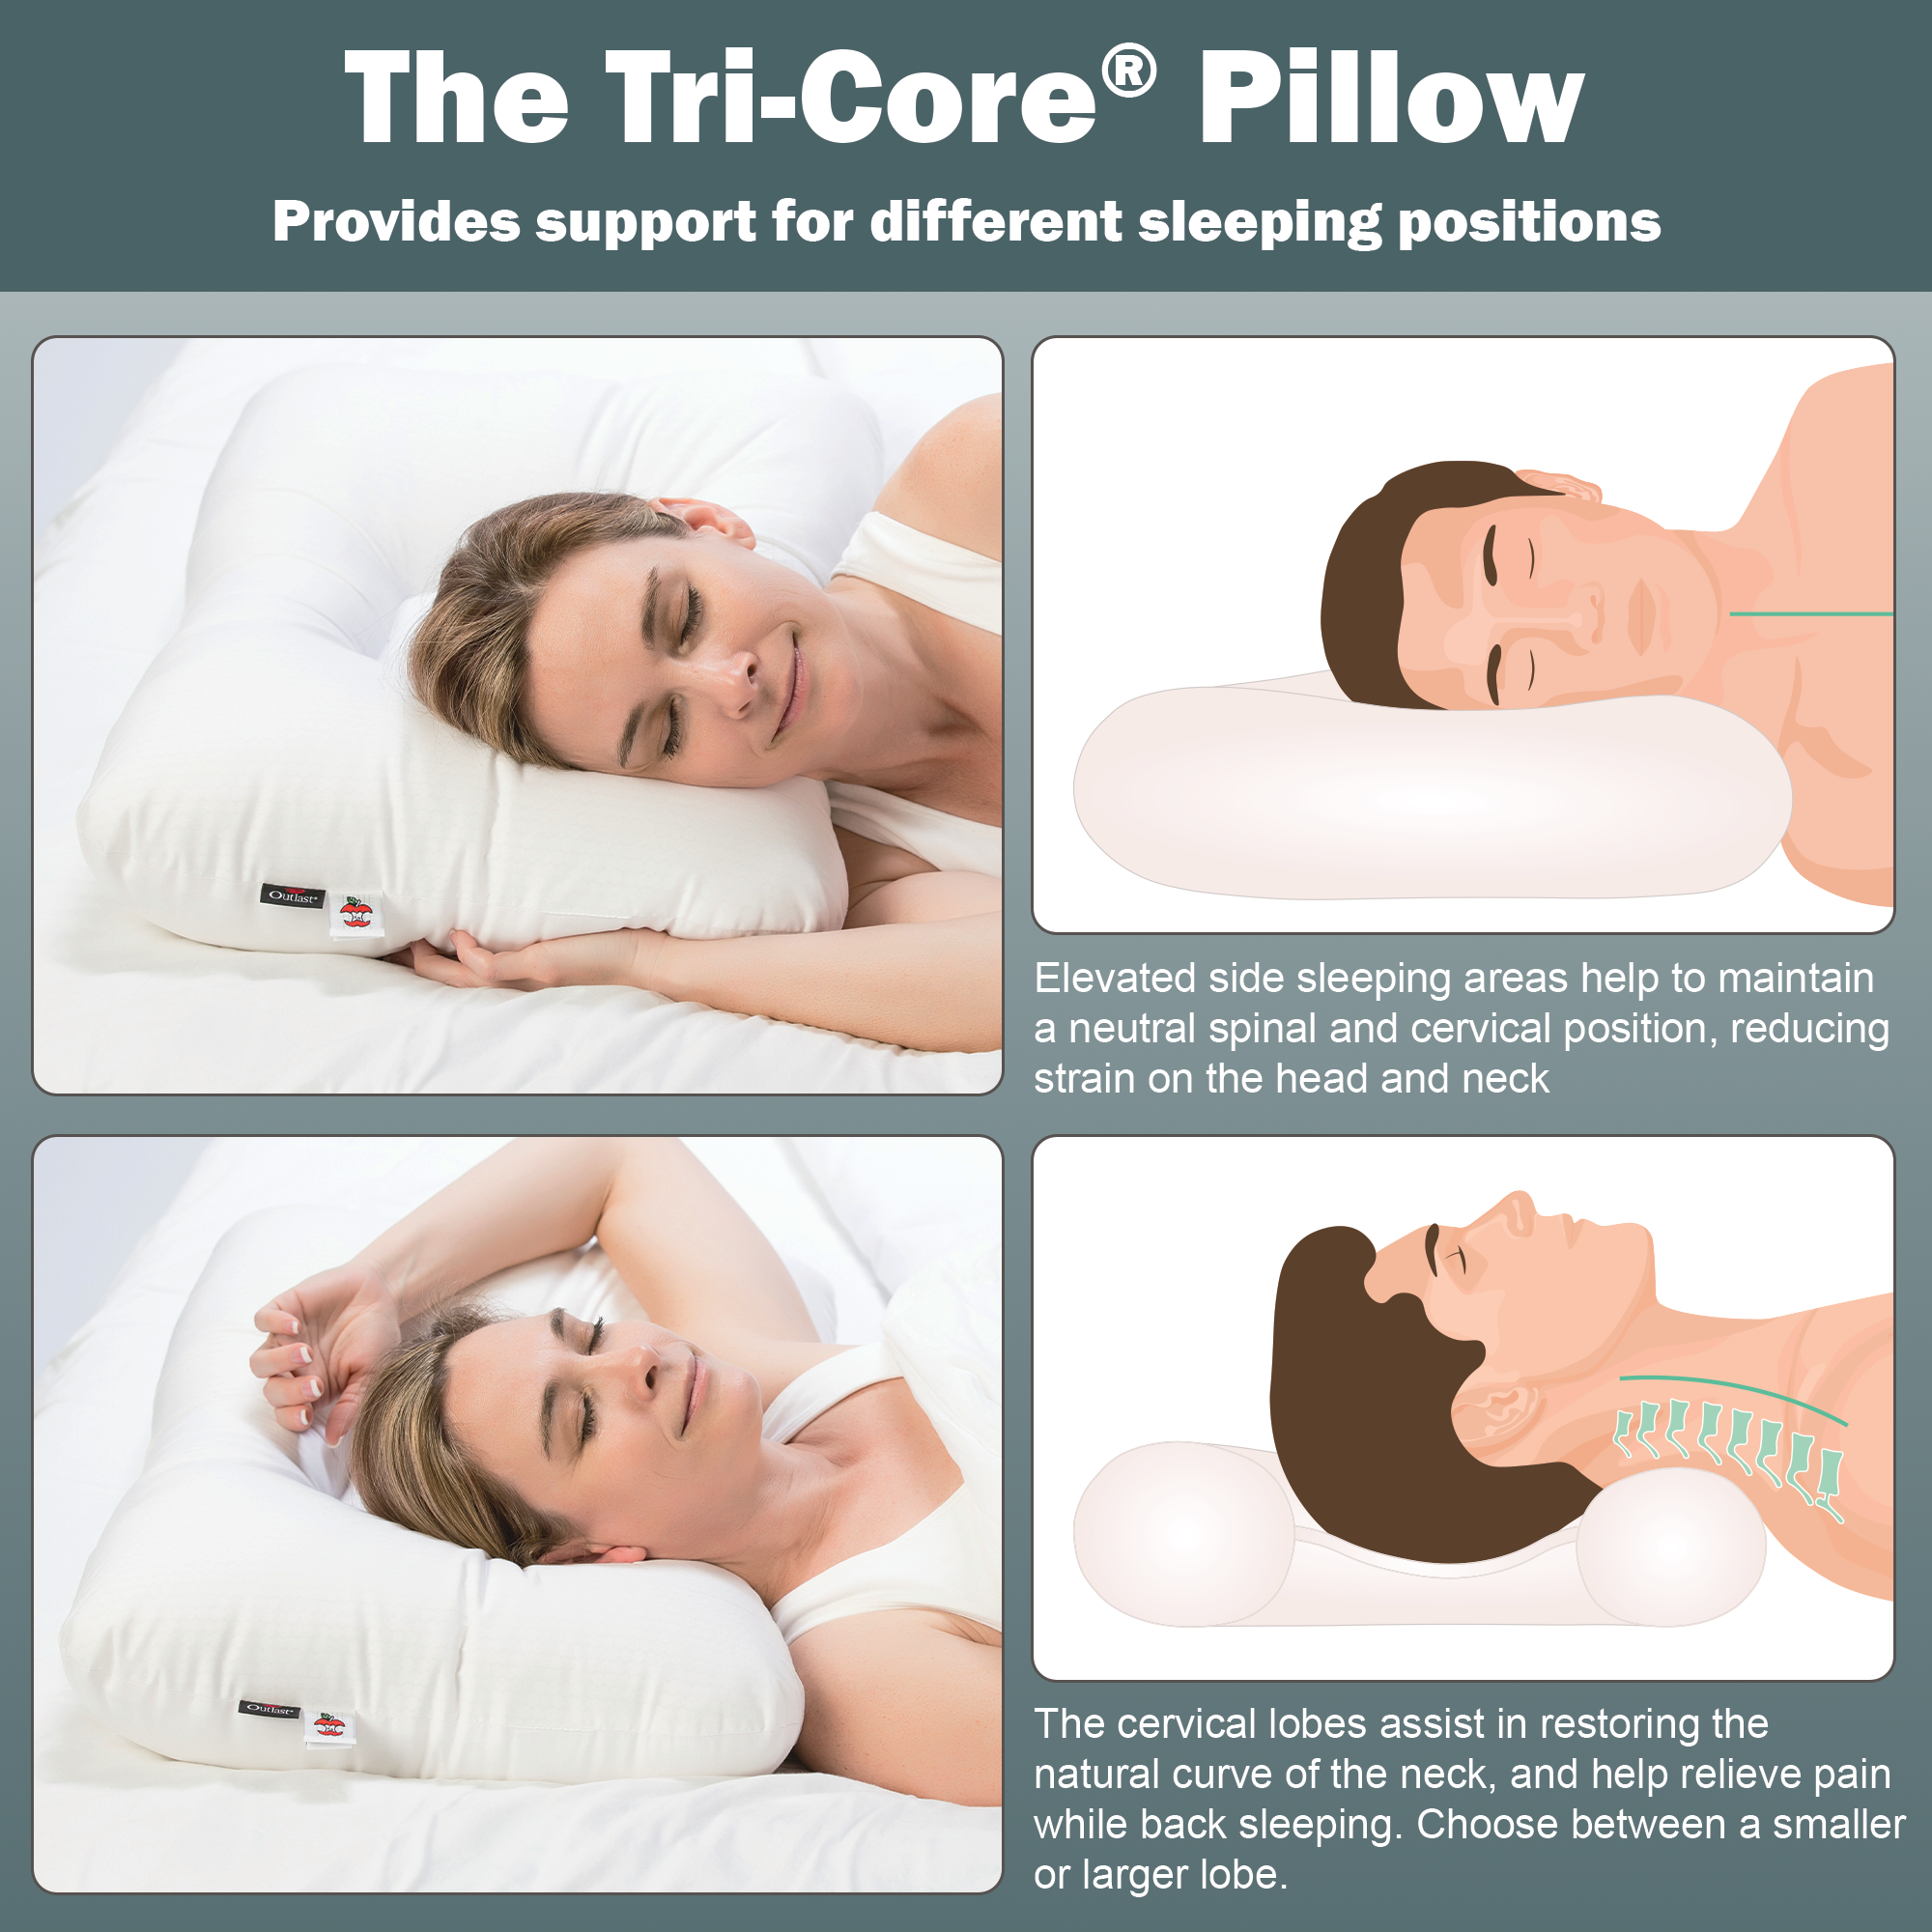 Tri-Core Comfort Zone